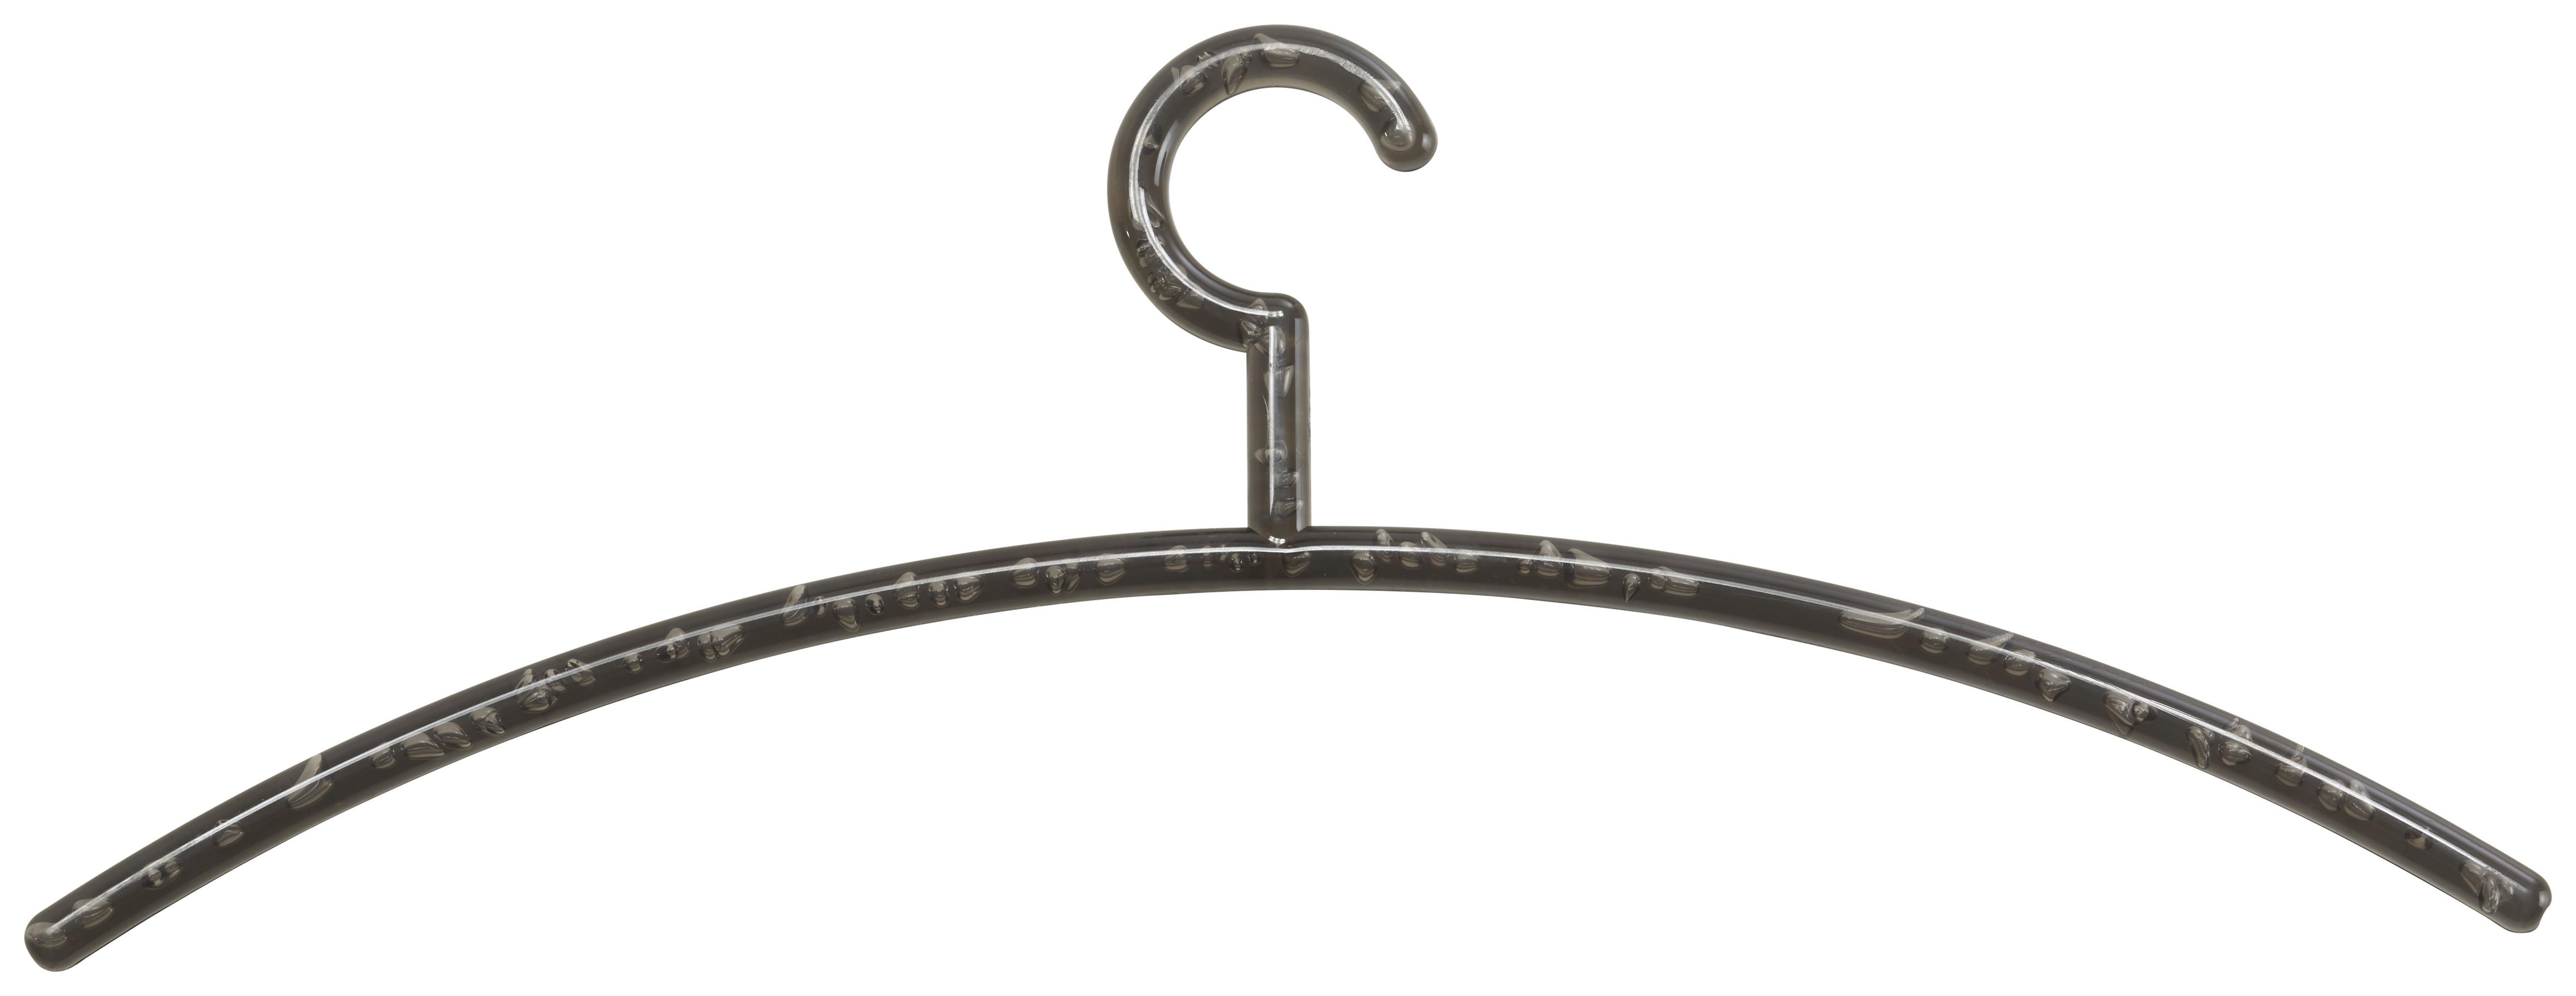 Kleiderbügel in Grau aus Kunststoff - Grau, Kunststoff (46/18/1cm) - Based